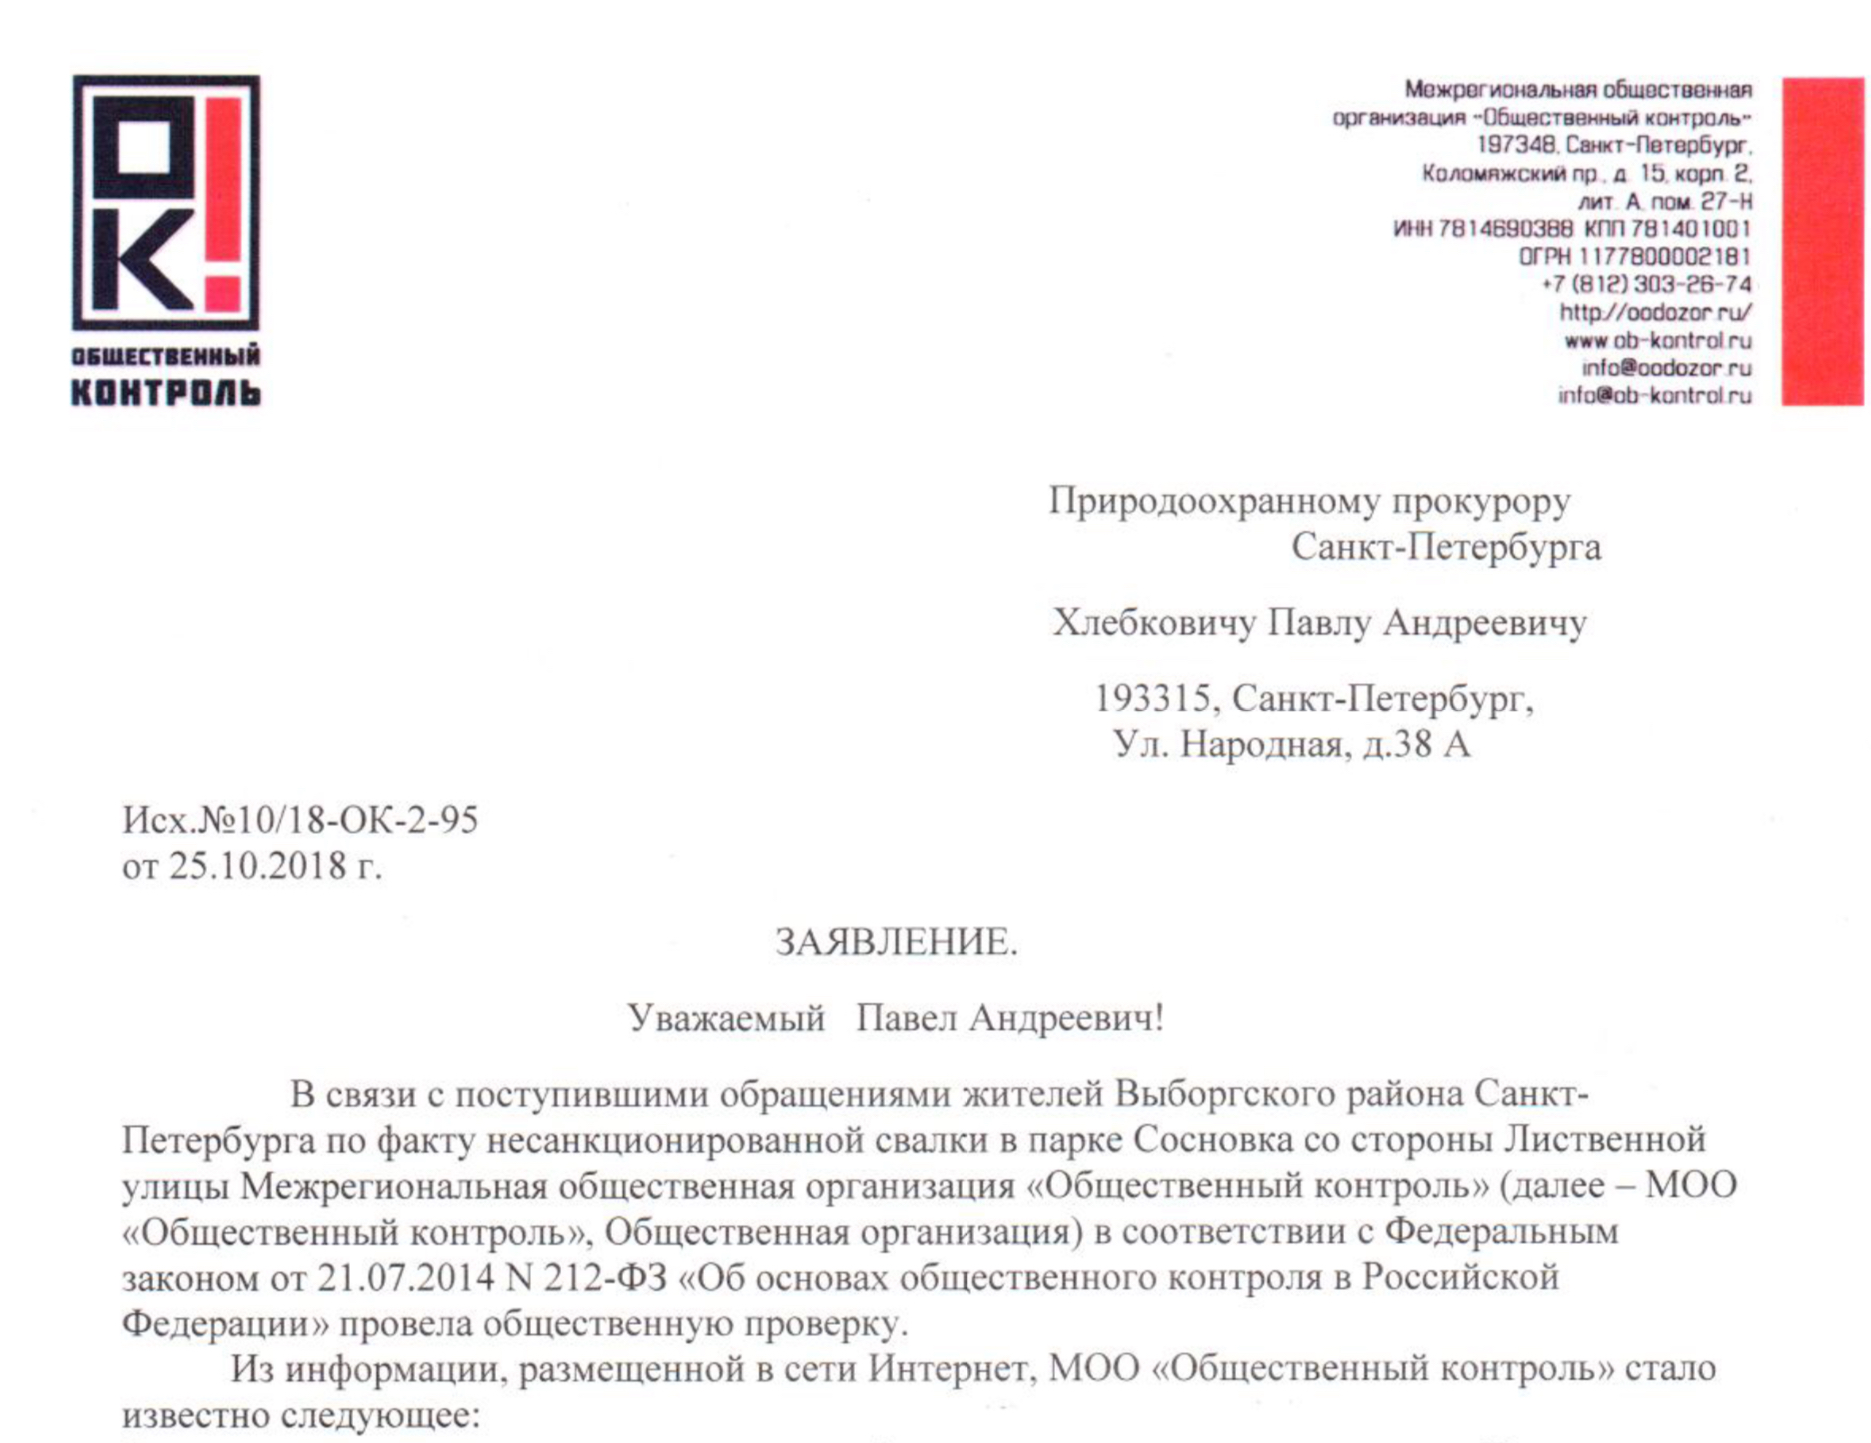 Заявление на имя Природоохранного прокурора Санкт-Петербурга Хлебковича Павла Андреевича по факту несанкционированной свалки в парке Сосновка.